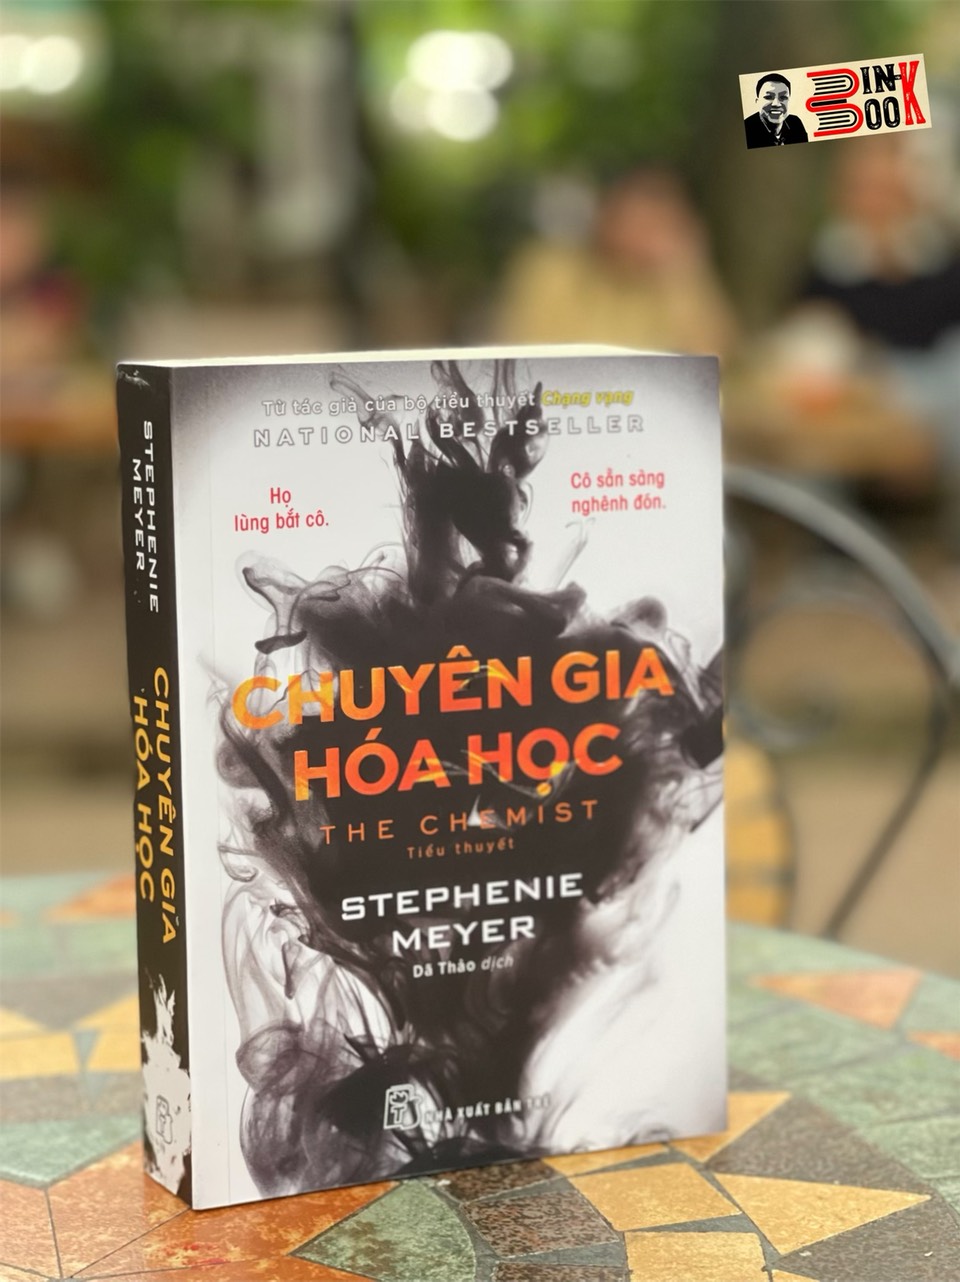 CHUYÊN GIA HÓA HỌC - Stephenie Meyer - Dã Thảo dịch - Nhà xuất bản Trẻ